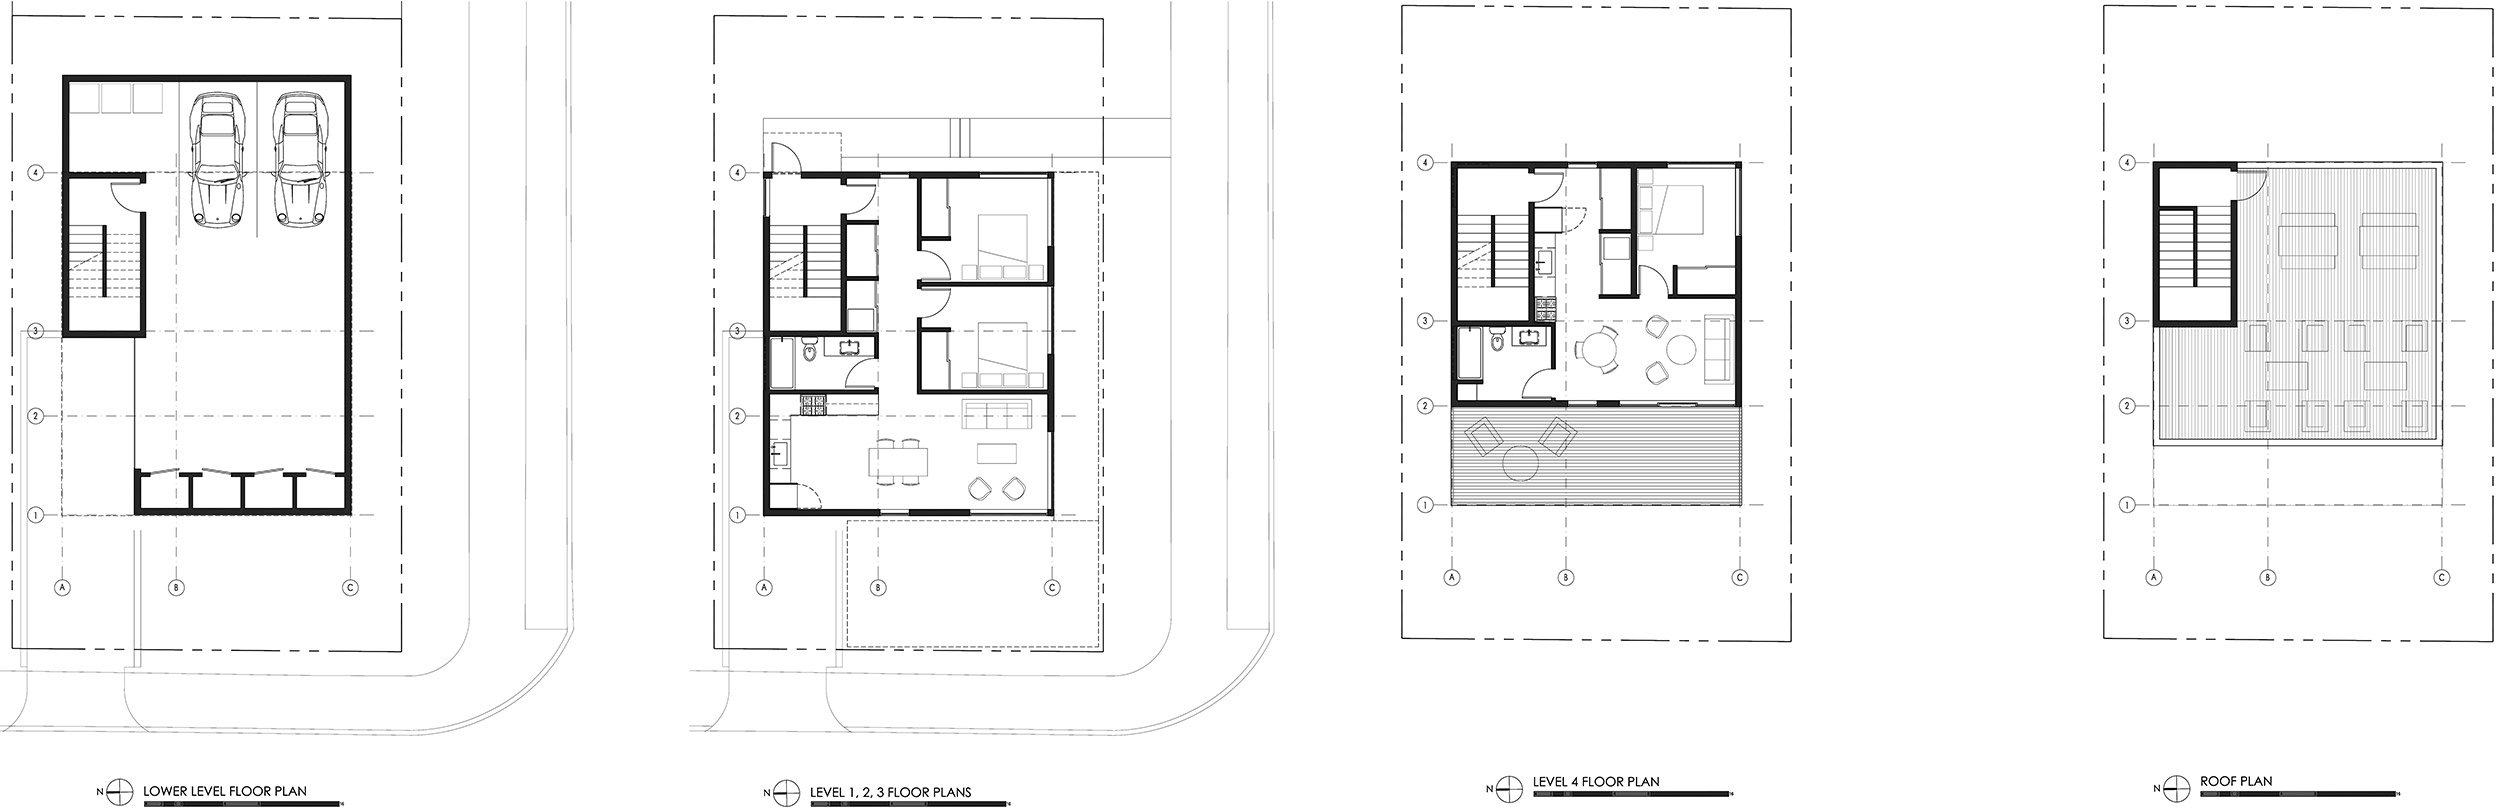 602-Floor-Plans-for-Web-1.jpg